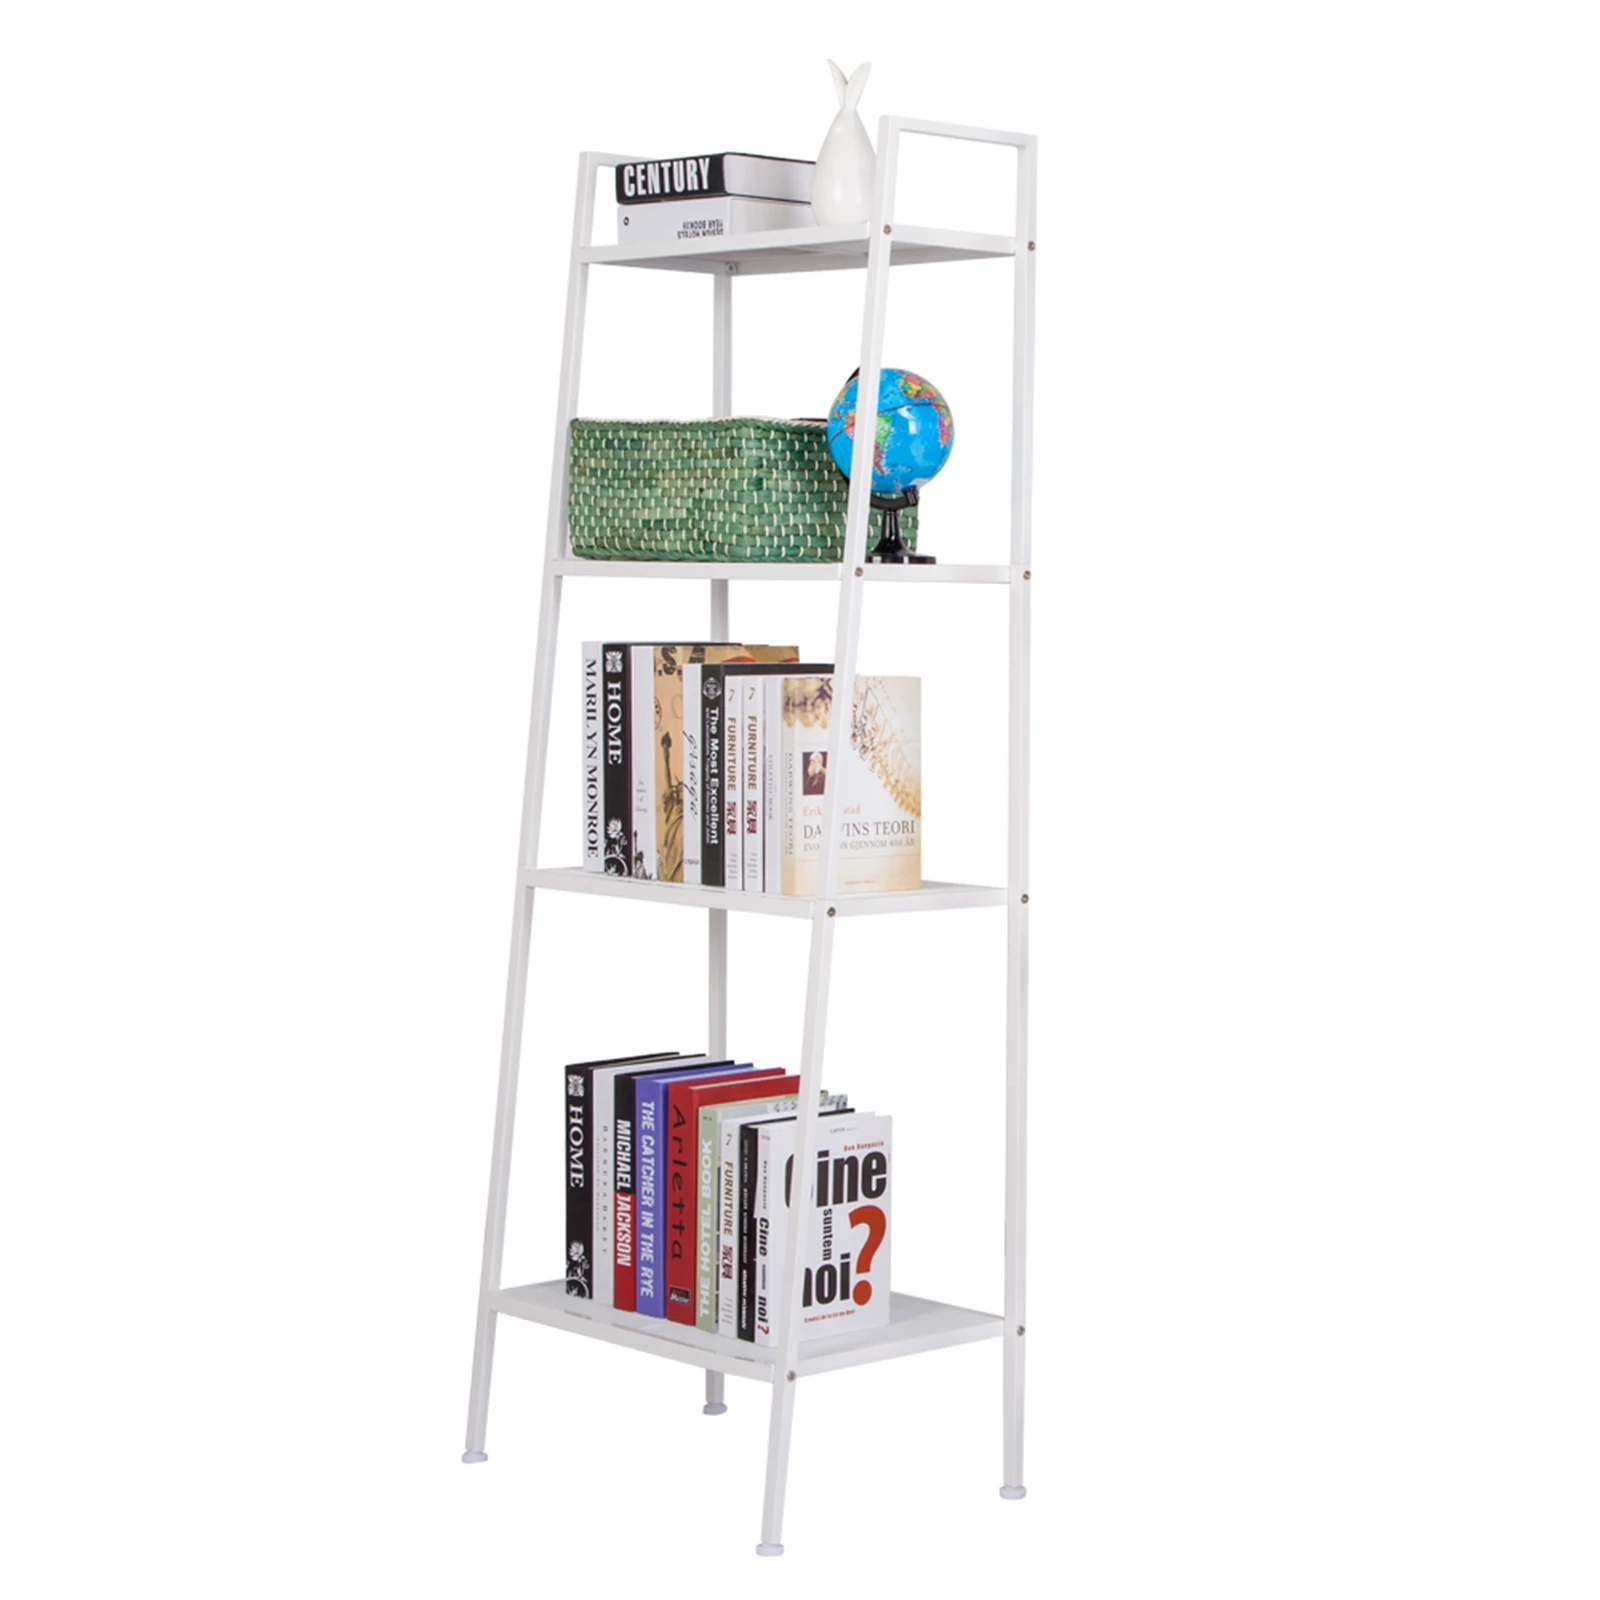 US Warehouse Bookshelf Widen 4 Tiers Bookshelf Ivory White for Living Room Standing Unit Shelf Bedroom Office